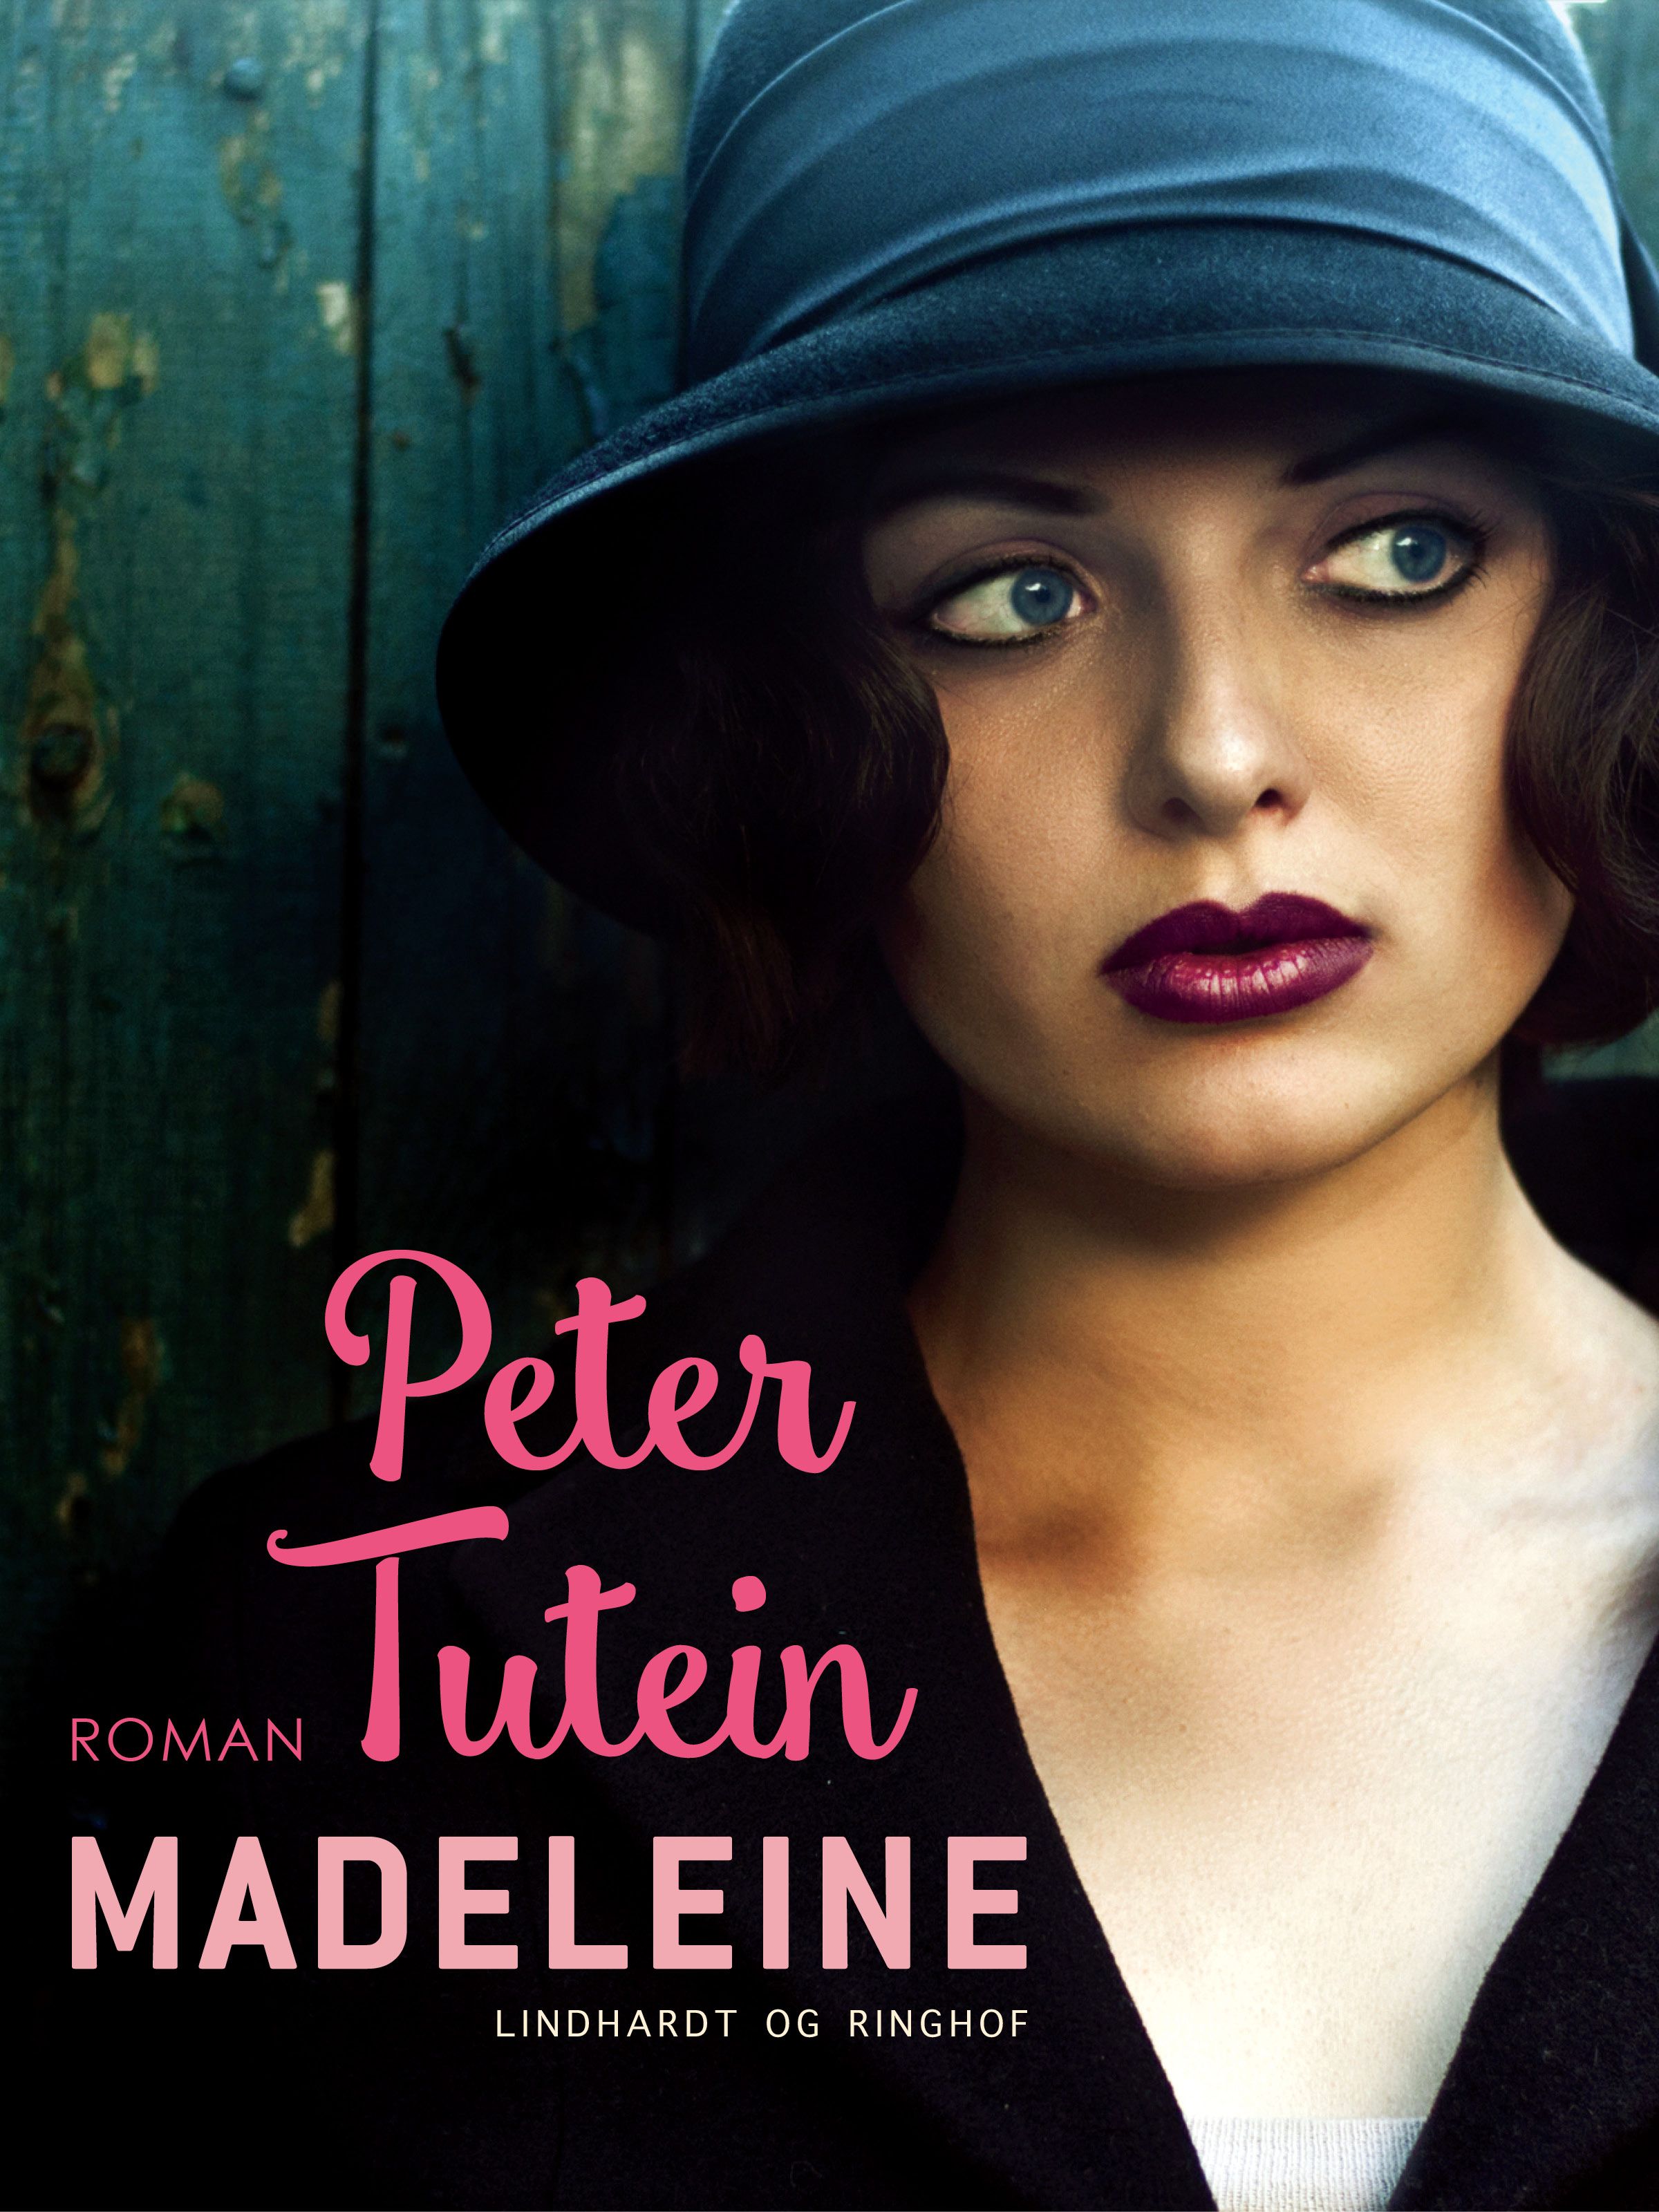 Madeleine, e-bog af Peter Tutein